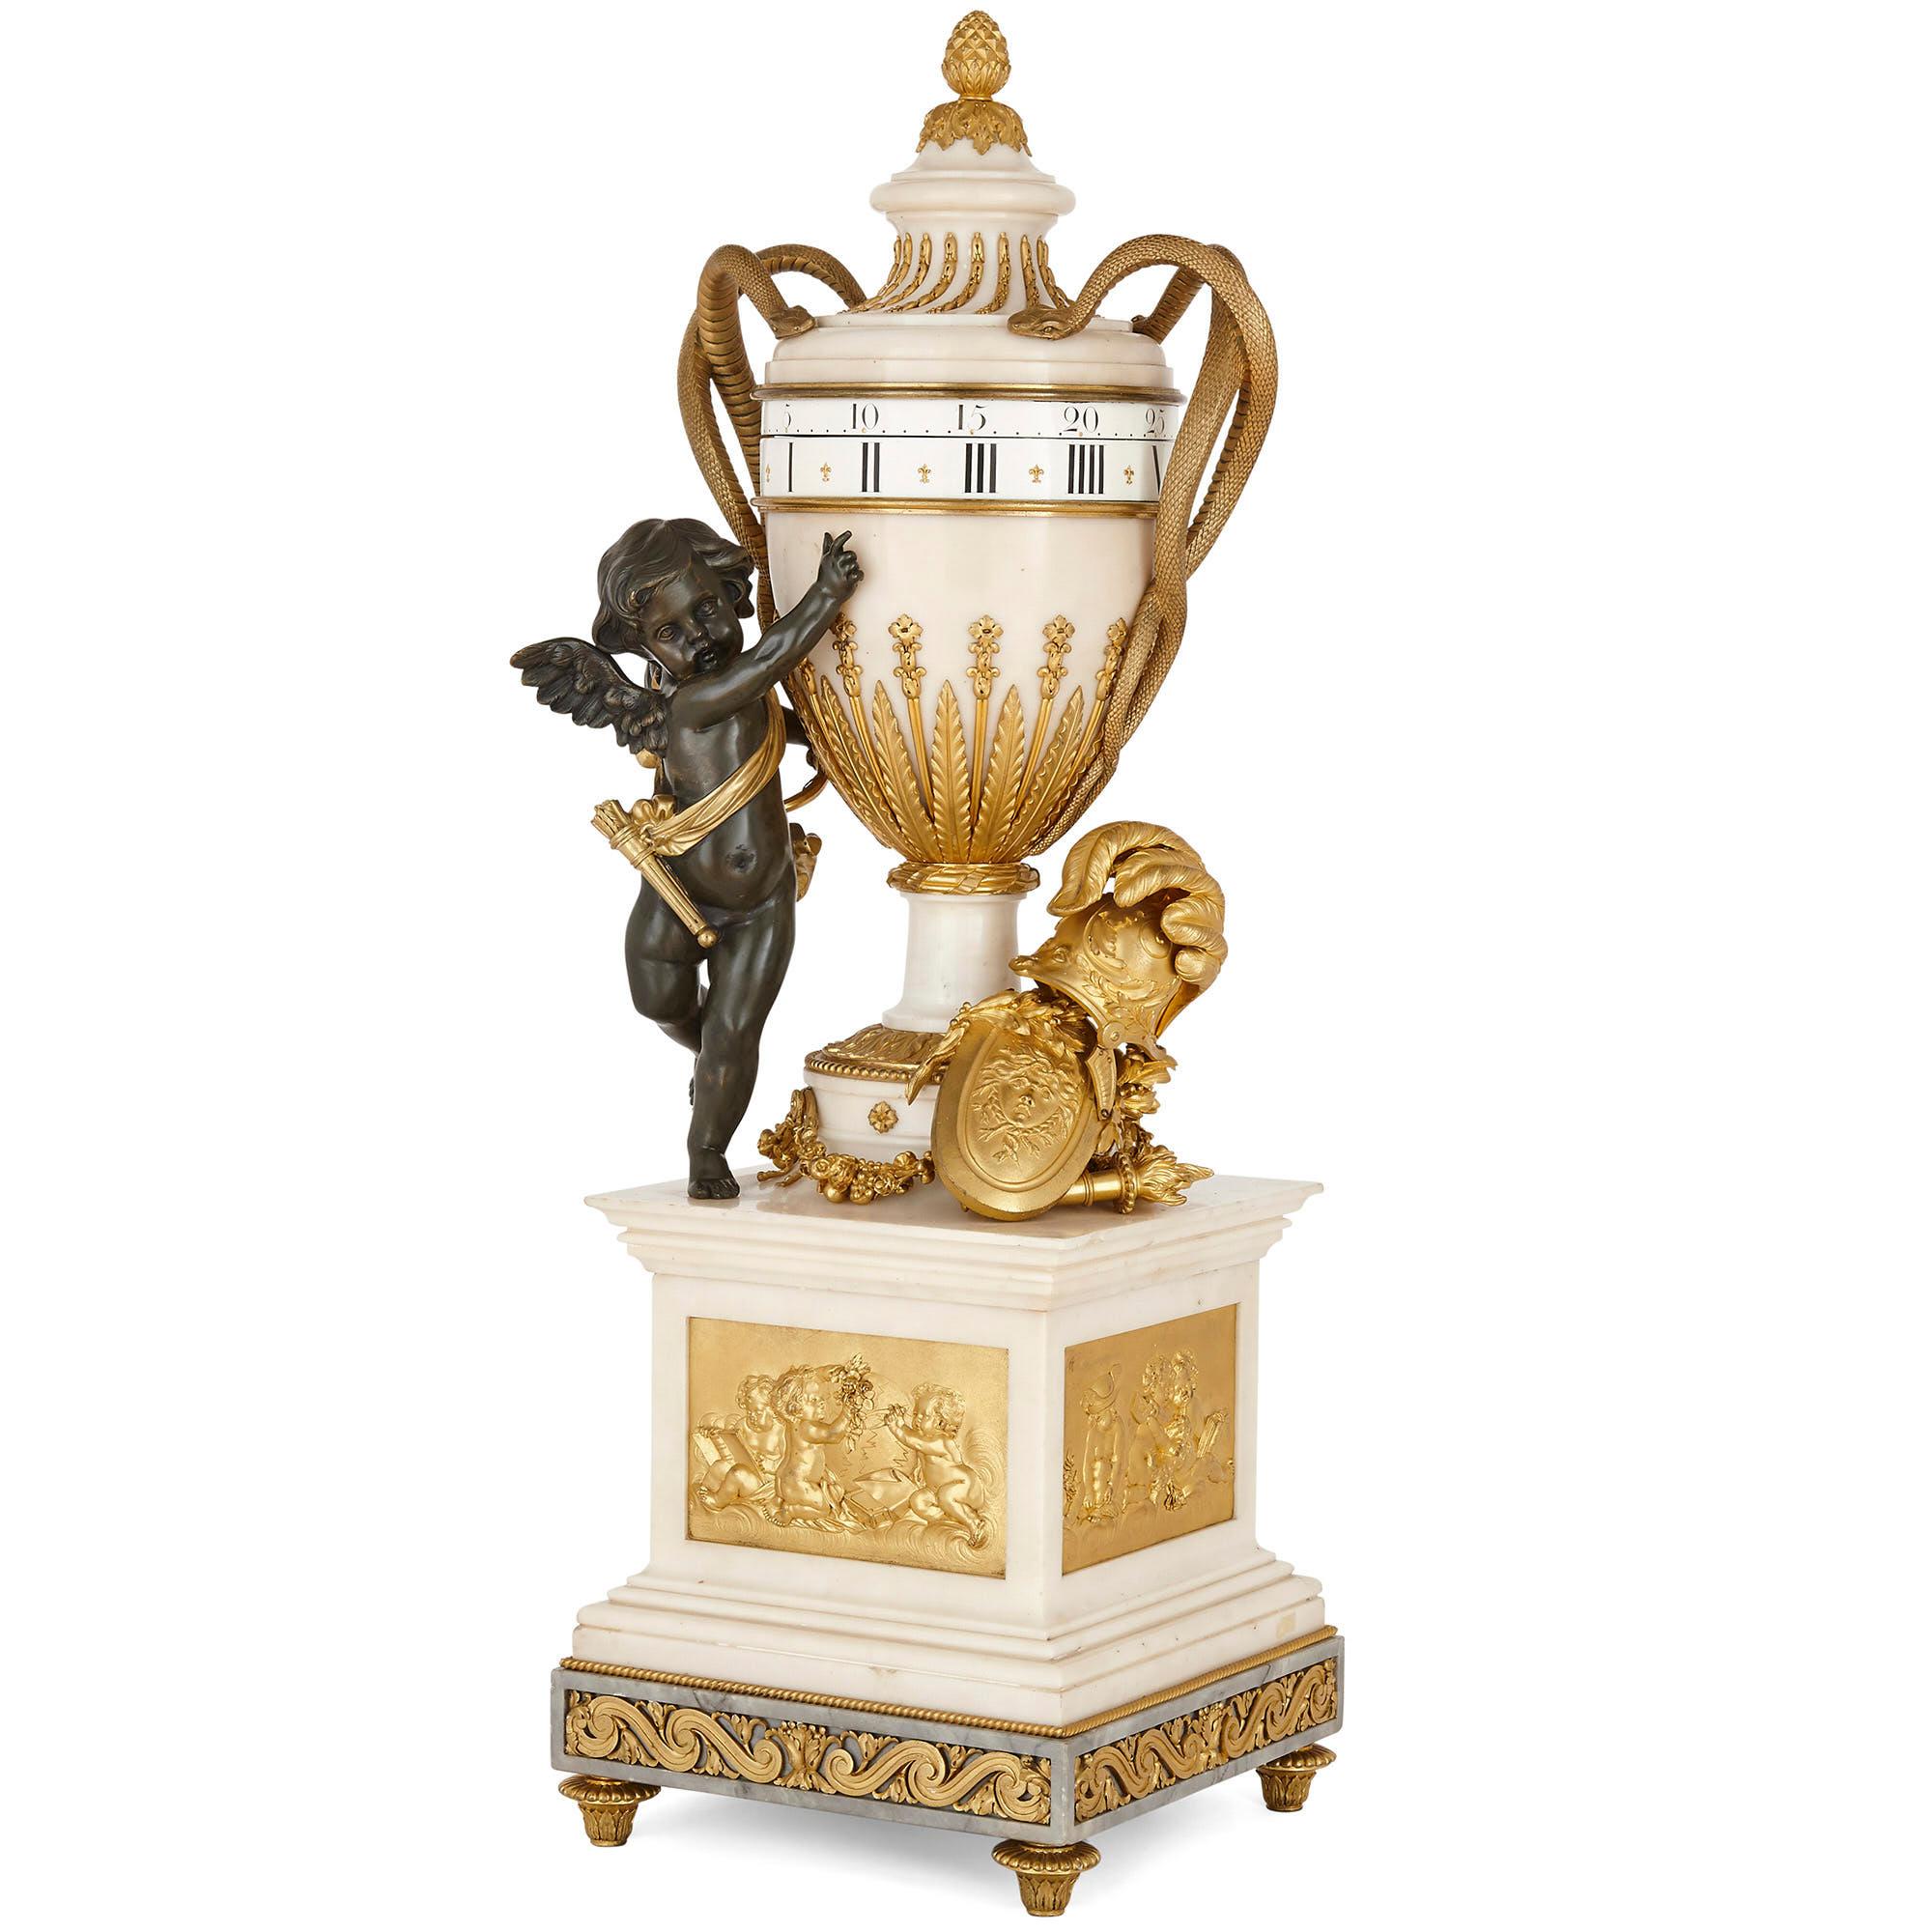 Große Kaminsimsuhr im neoklassischen Stil aus Marmor und vergoldeter Bronze mit rundem Uhrwerk
Französisch, Ende 19. Jahrhundert
Maße: Höhe 82cm, Breite 26cm, Tiefe 26cm

Diese ungewöhnlich große Kaminsimsuhr ist aus feinsten Materialien